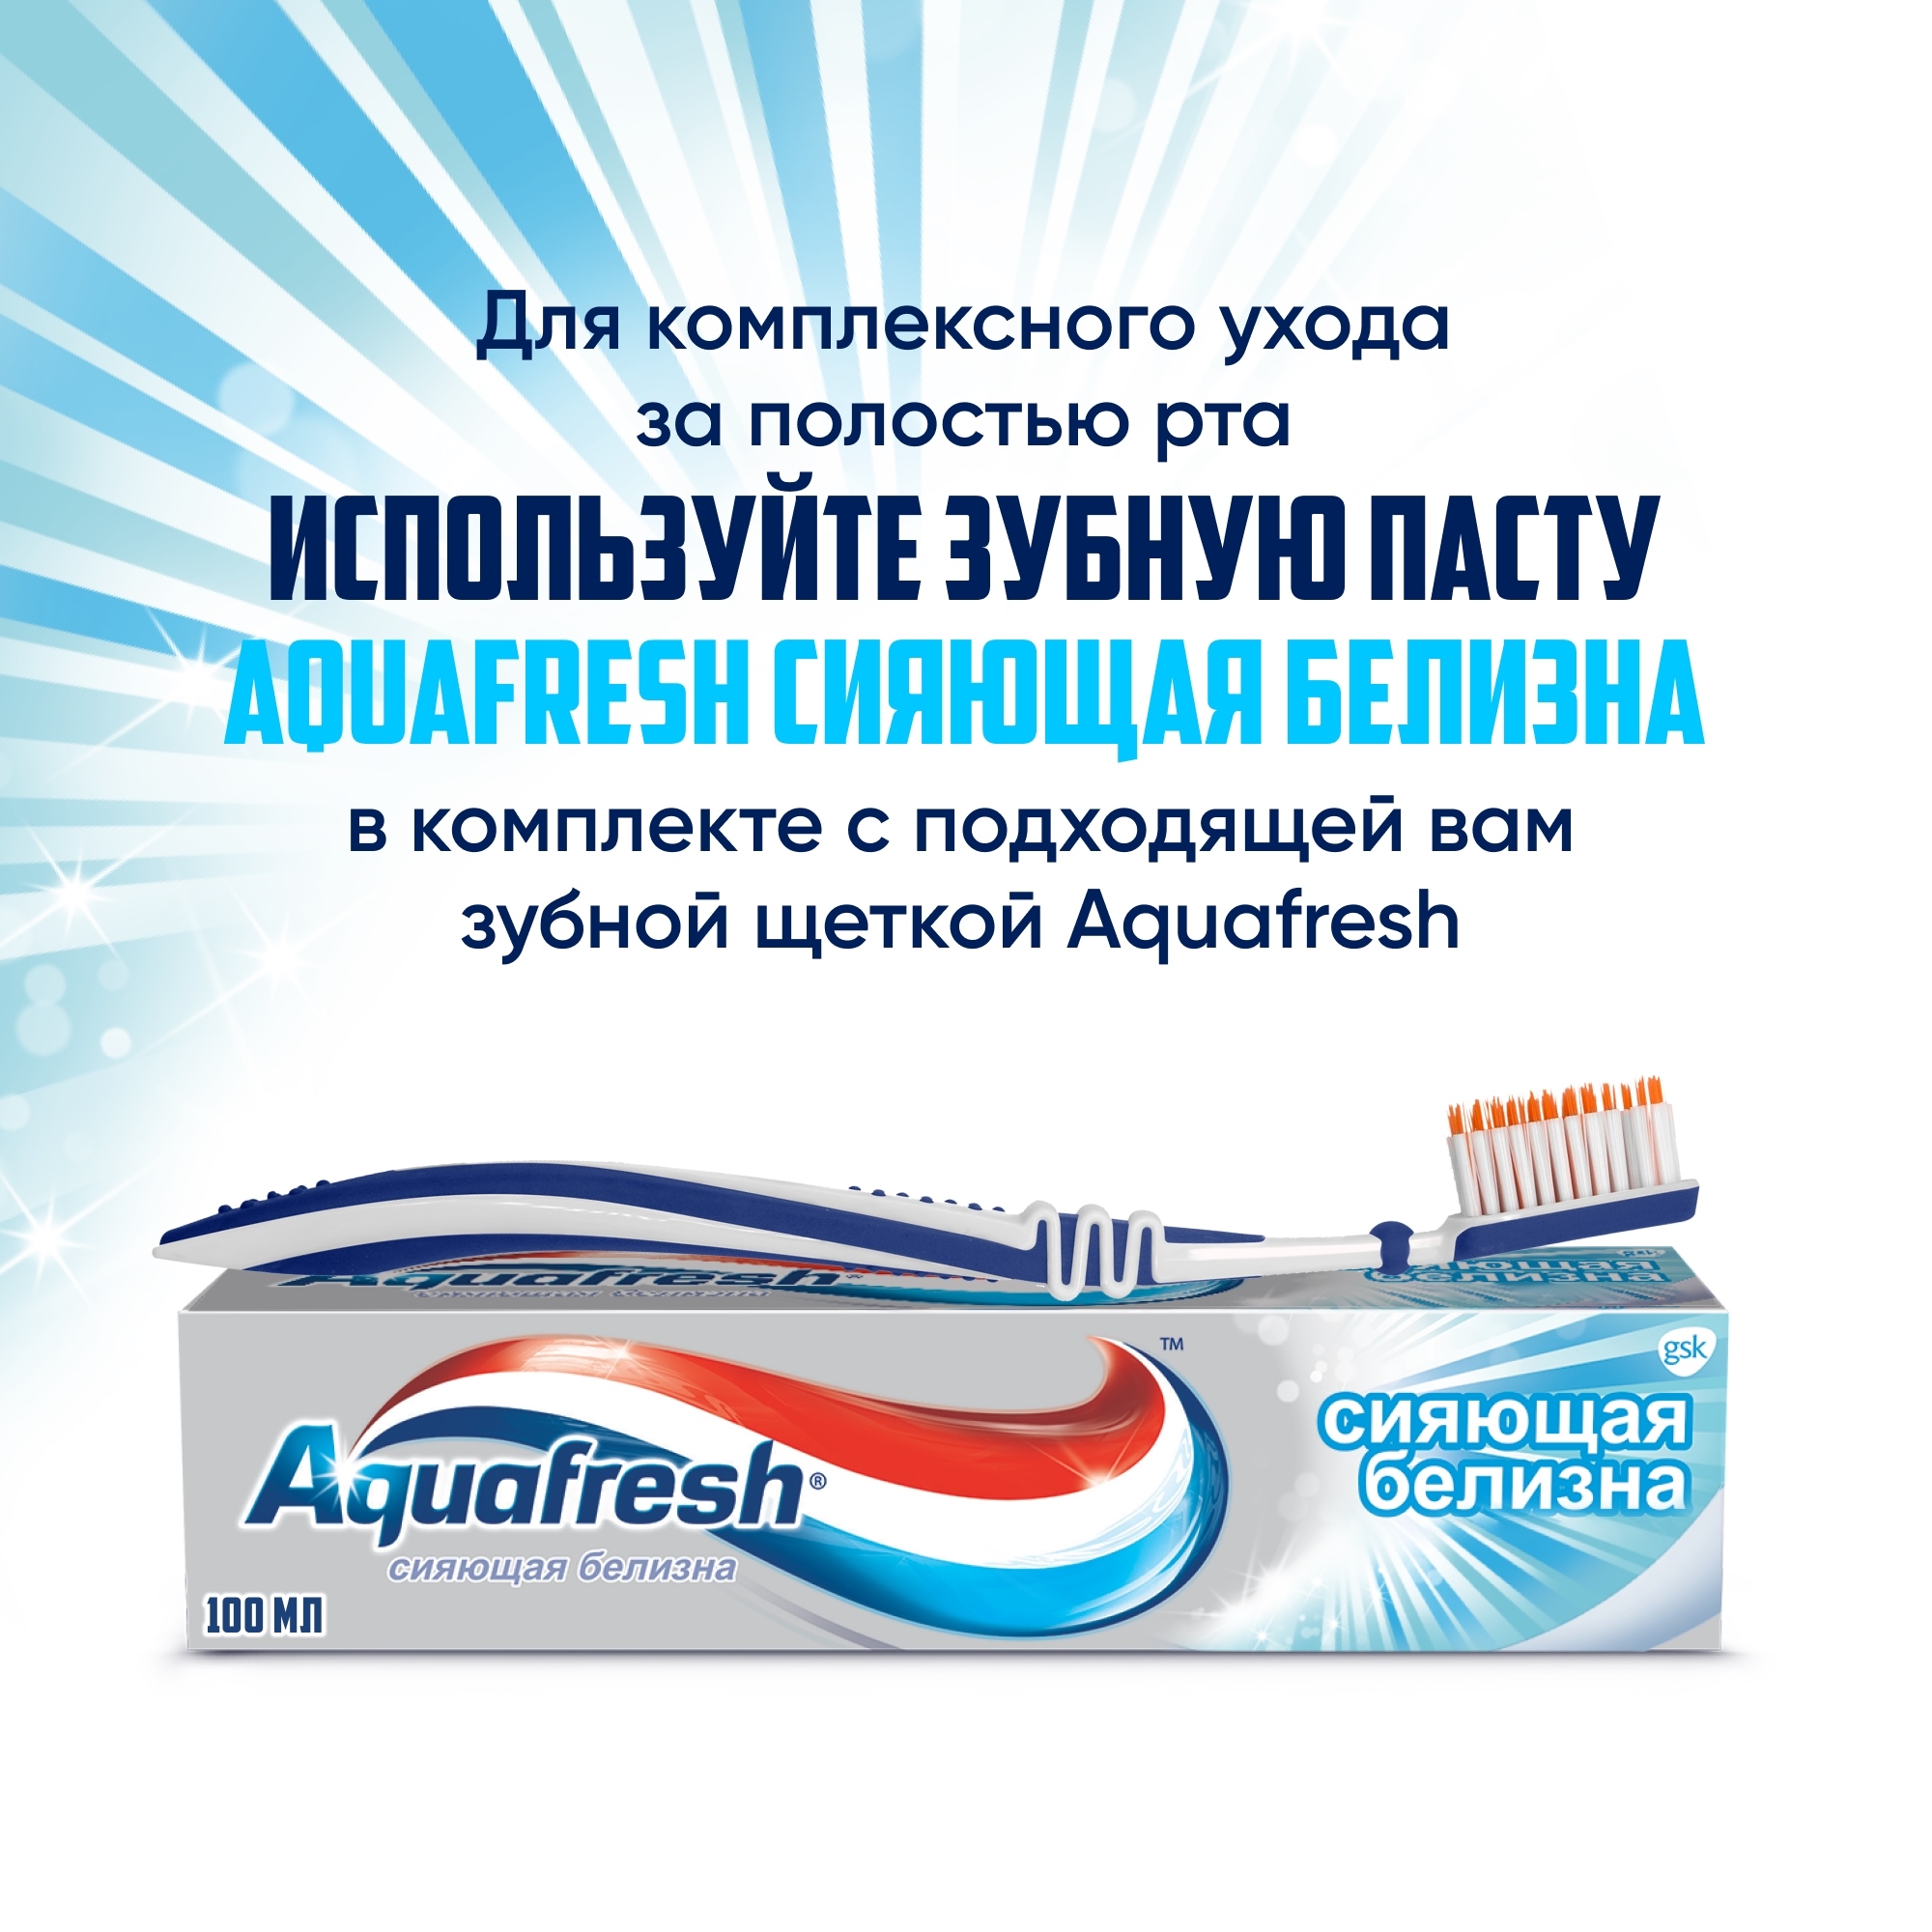 Зубная паста Aquafresh Сияющая белизна 100 мл, размер 19х5х4,5 см NS7062100 - фото 8